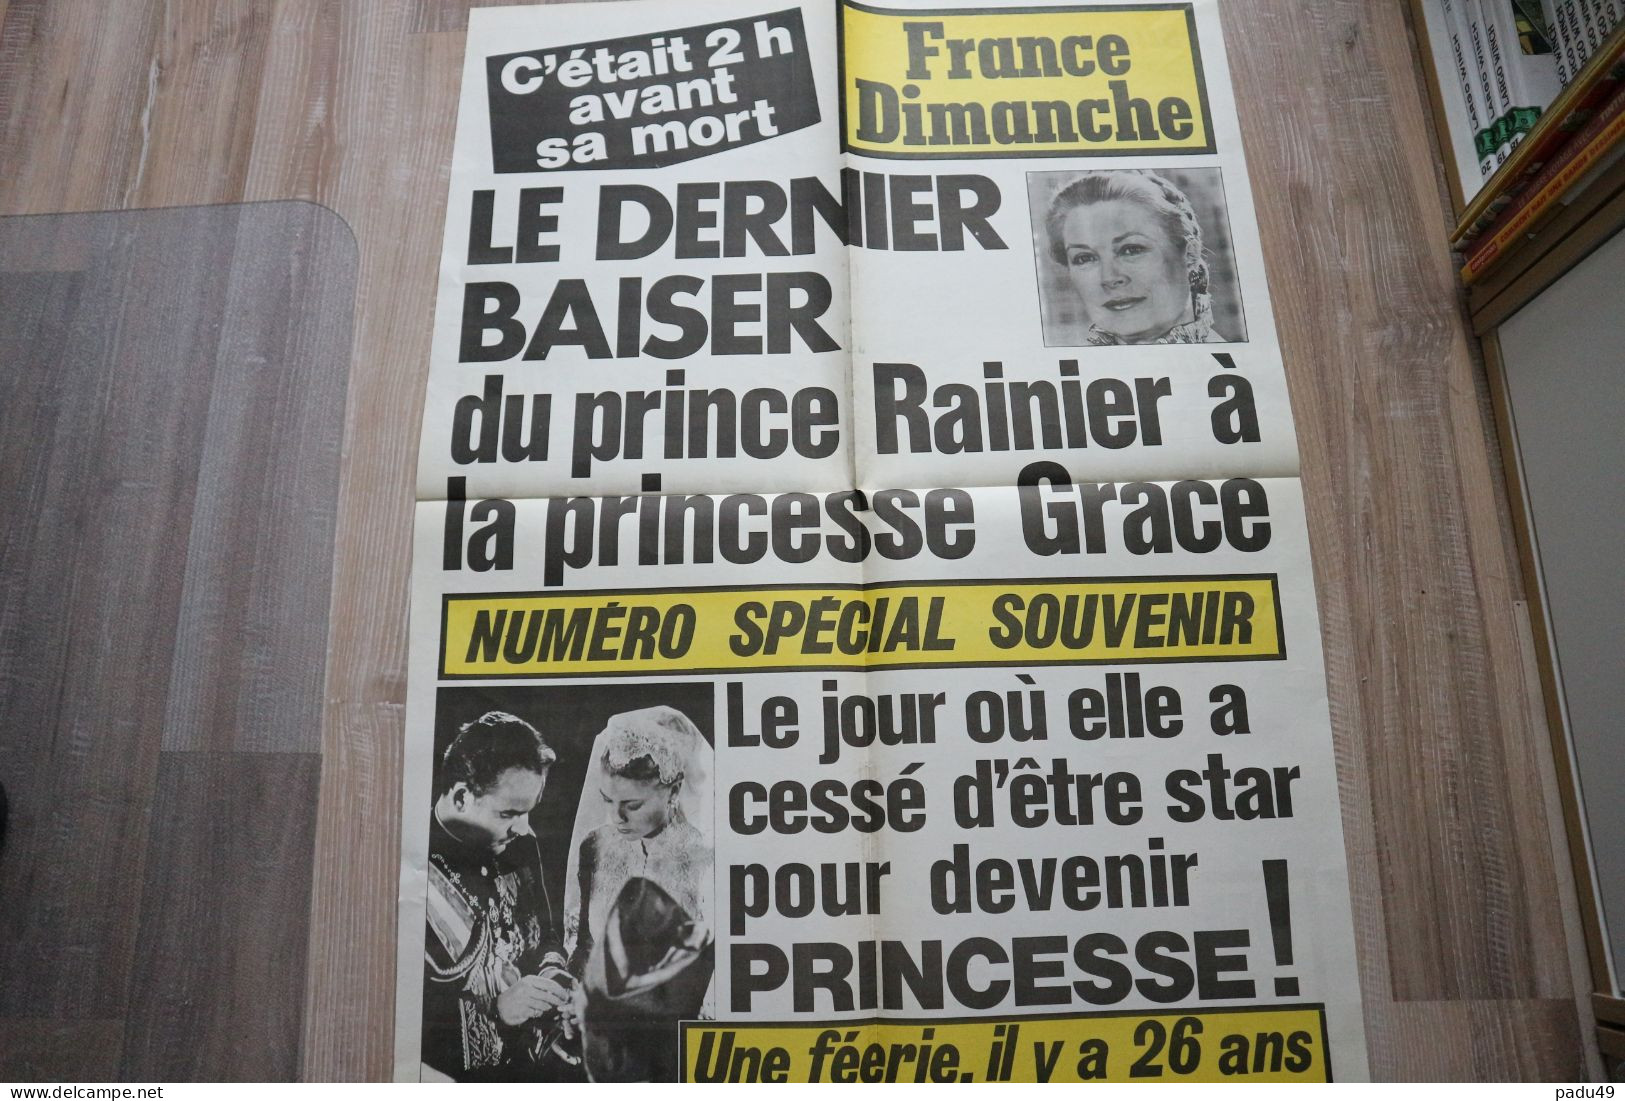 Affiche FRANCE DIMANCHE - Afiches